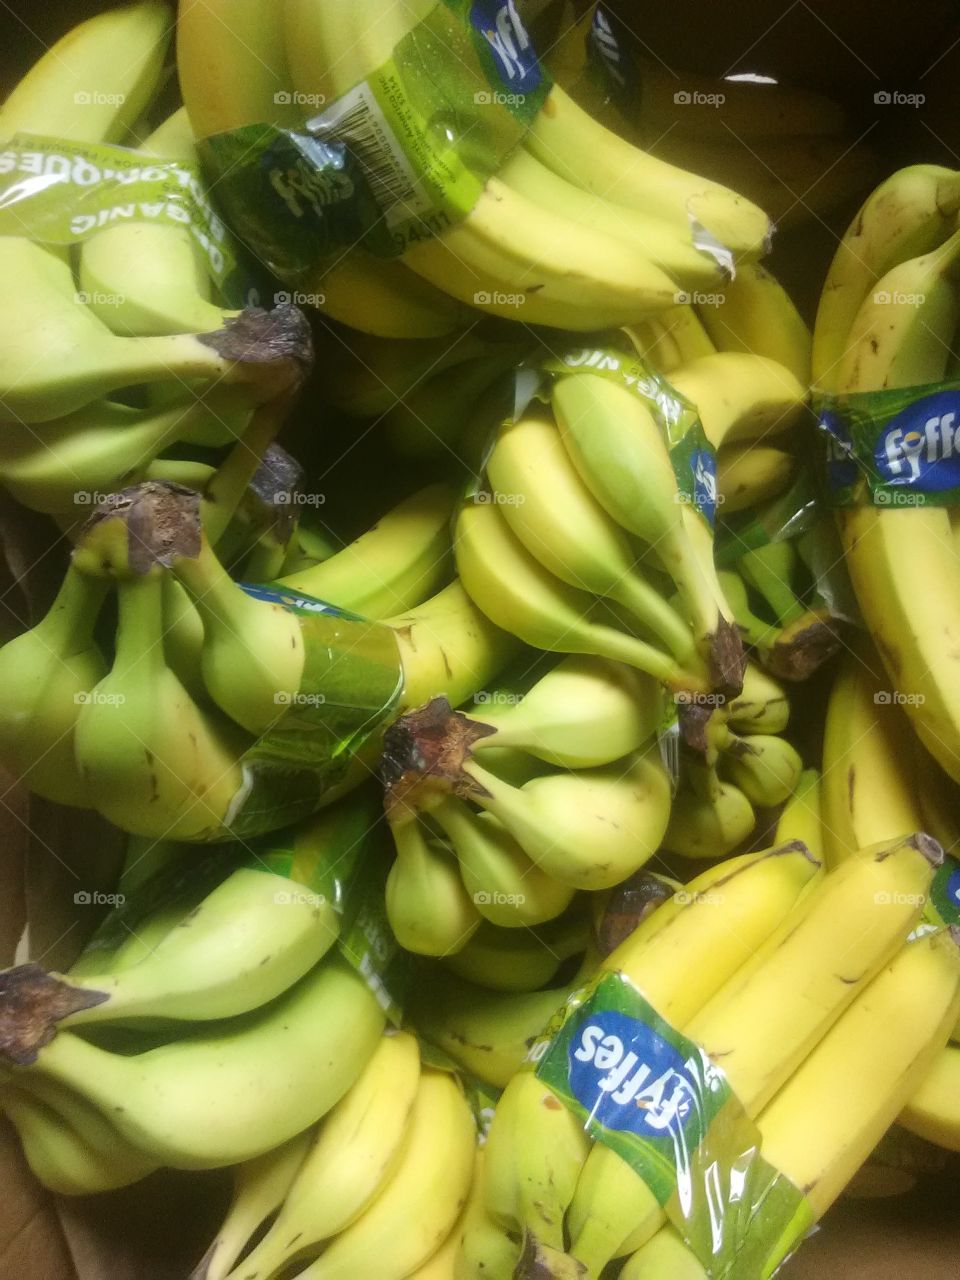 this a whole big beautiful box of delicious banana's holy banana's bat man 😜